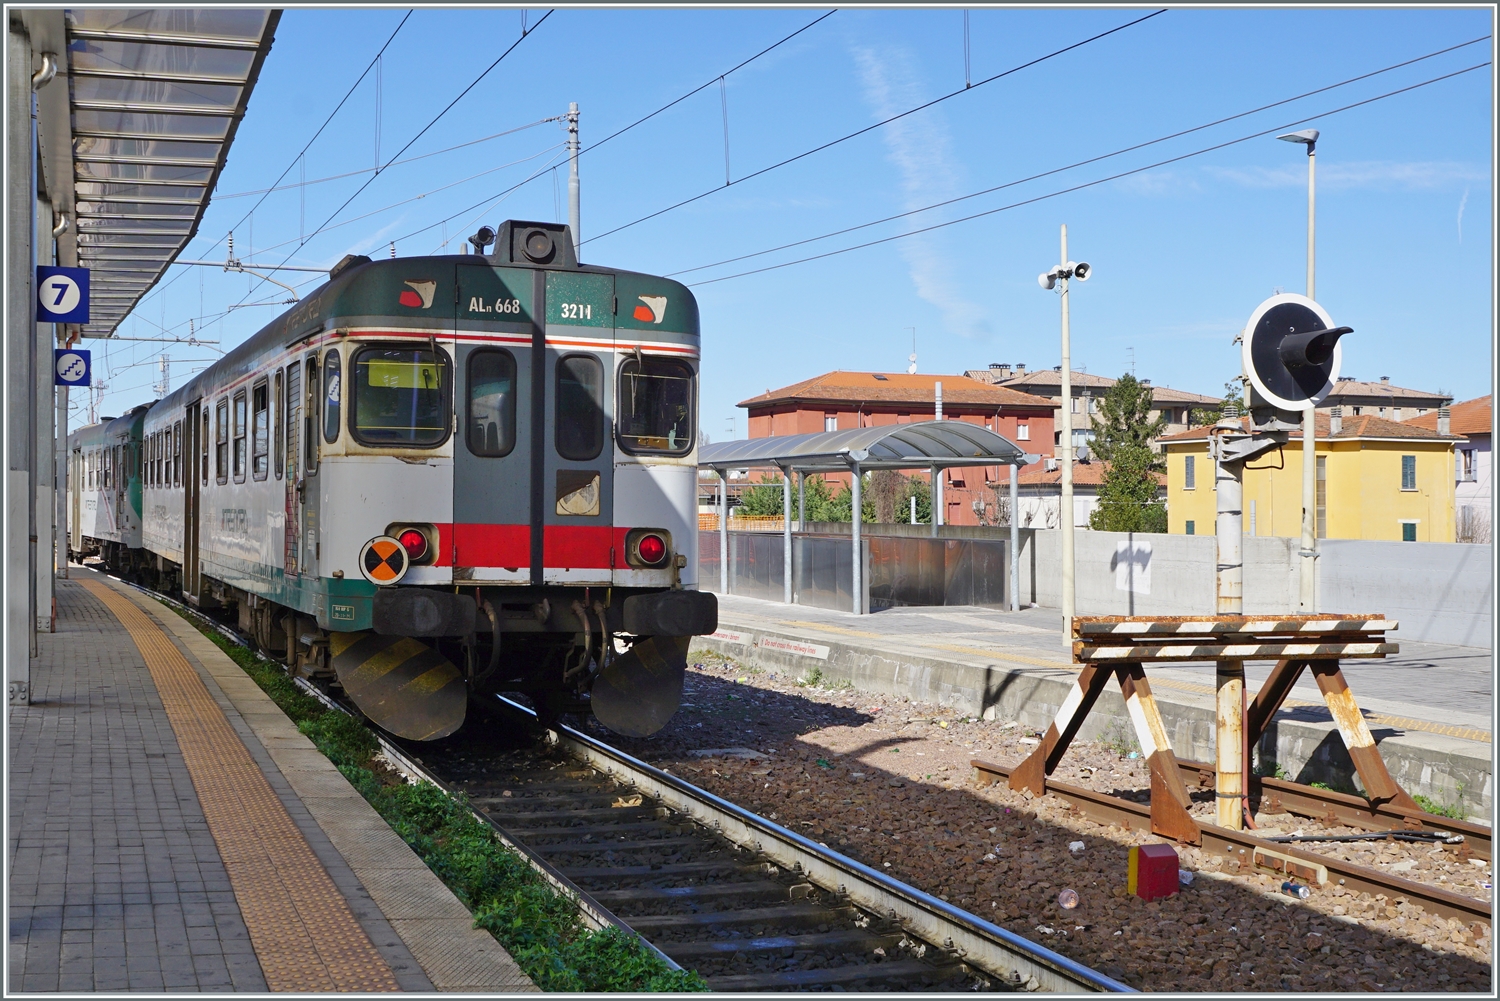 Die beiden Trenord Aln 668 3221 und 3211 sind von Brescia kommend an ihrem Zielbahnhof Parma angekommen. 

14. März 2023